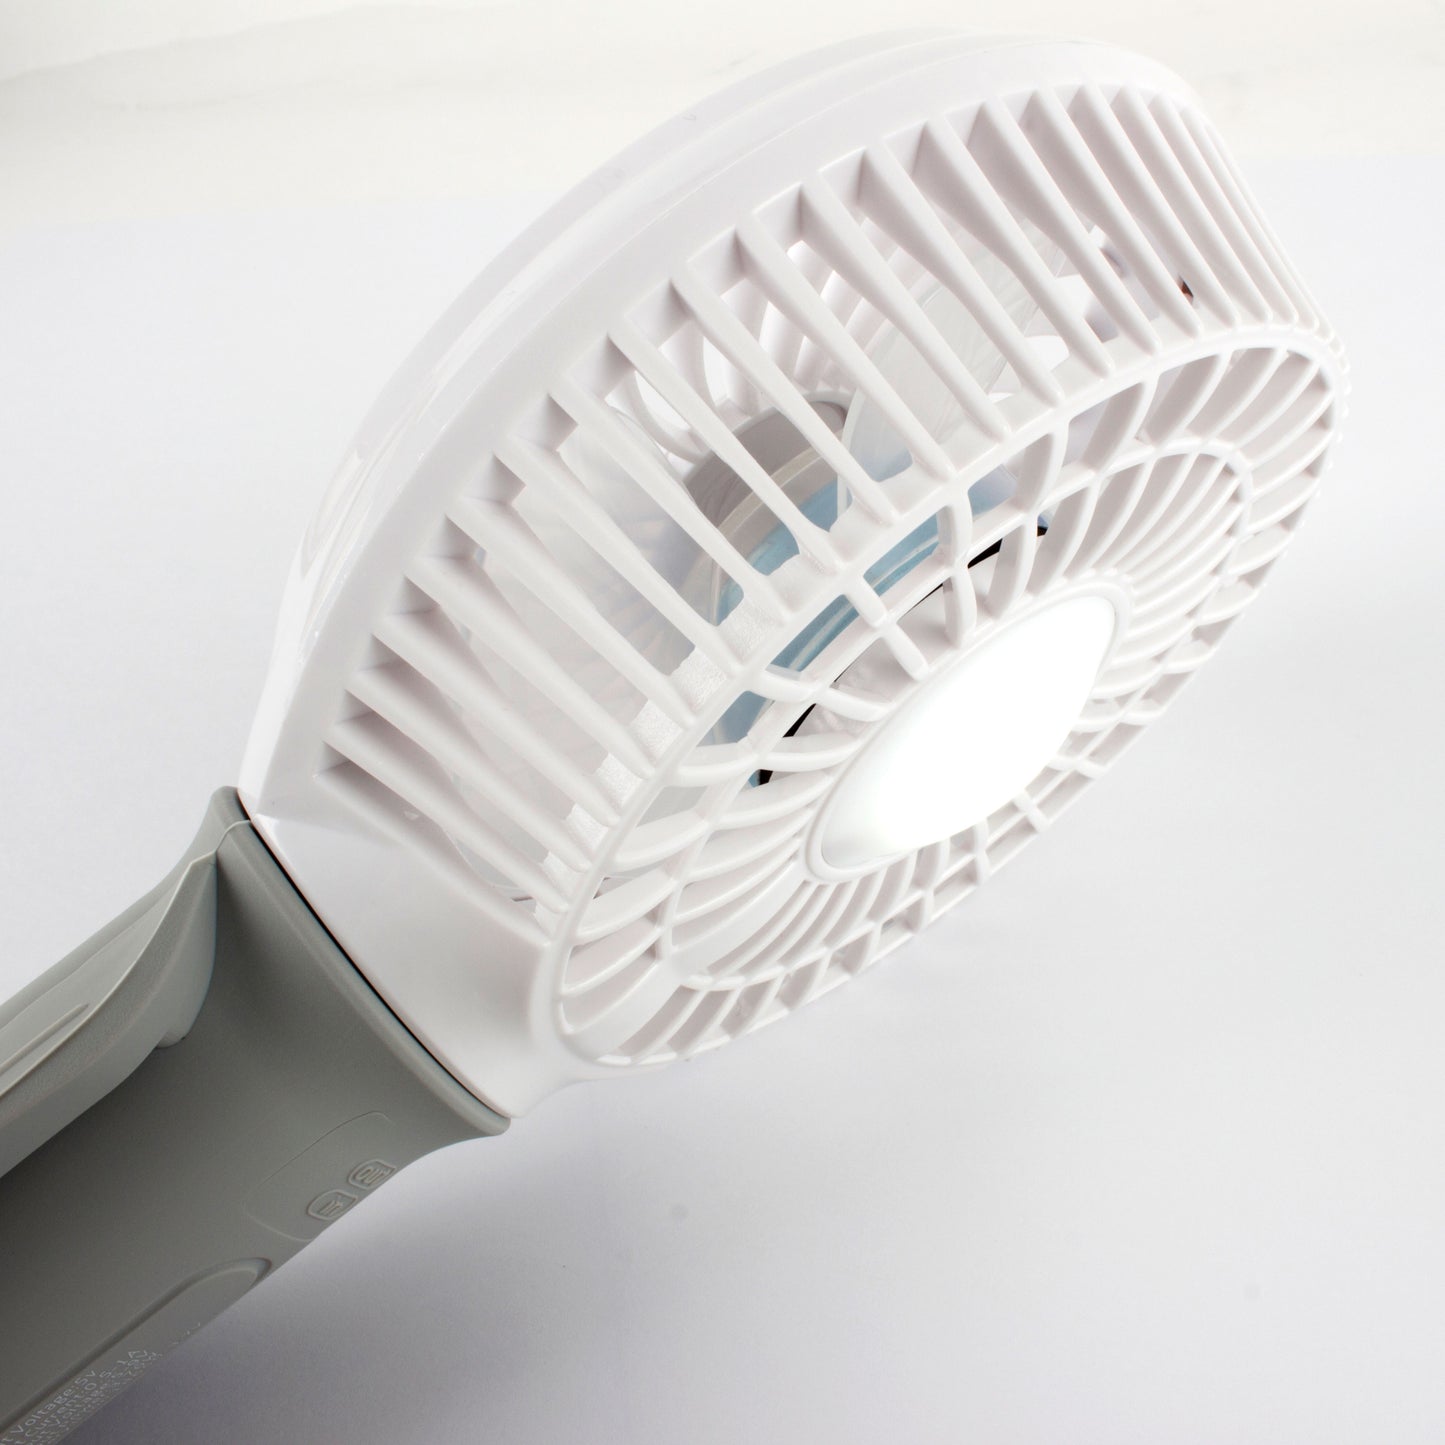 3-in-1 Rechargeable Fan, Light & Powerbank